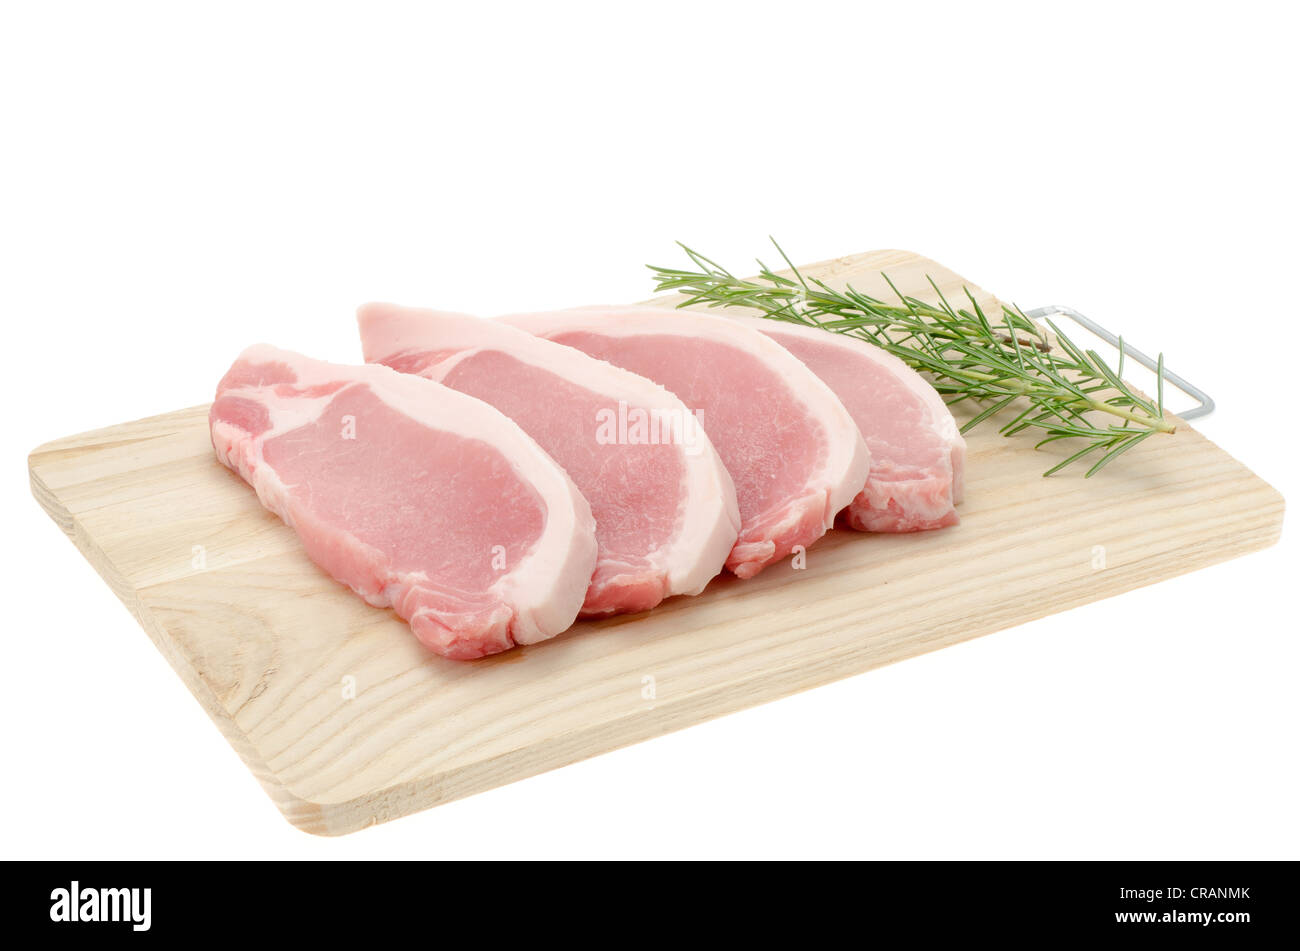 Frisches Schweinefleisch Lende Steaks auf ein Holzbrett - Studio gedreht mit einem weißen Hintergrund platziert Stockfoto